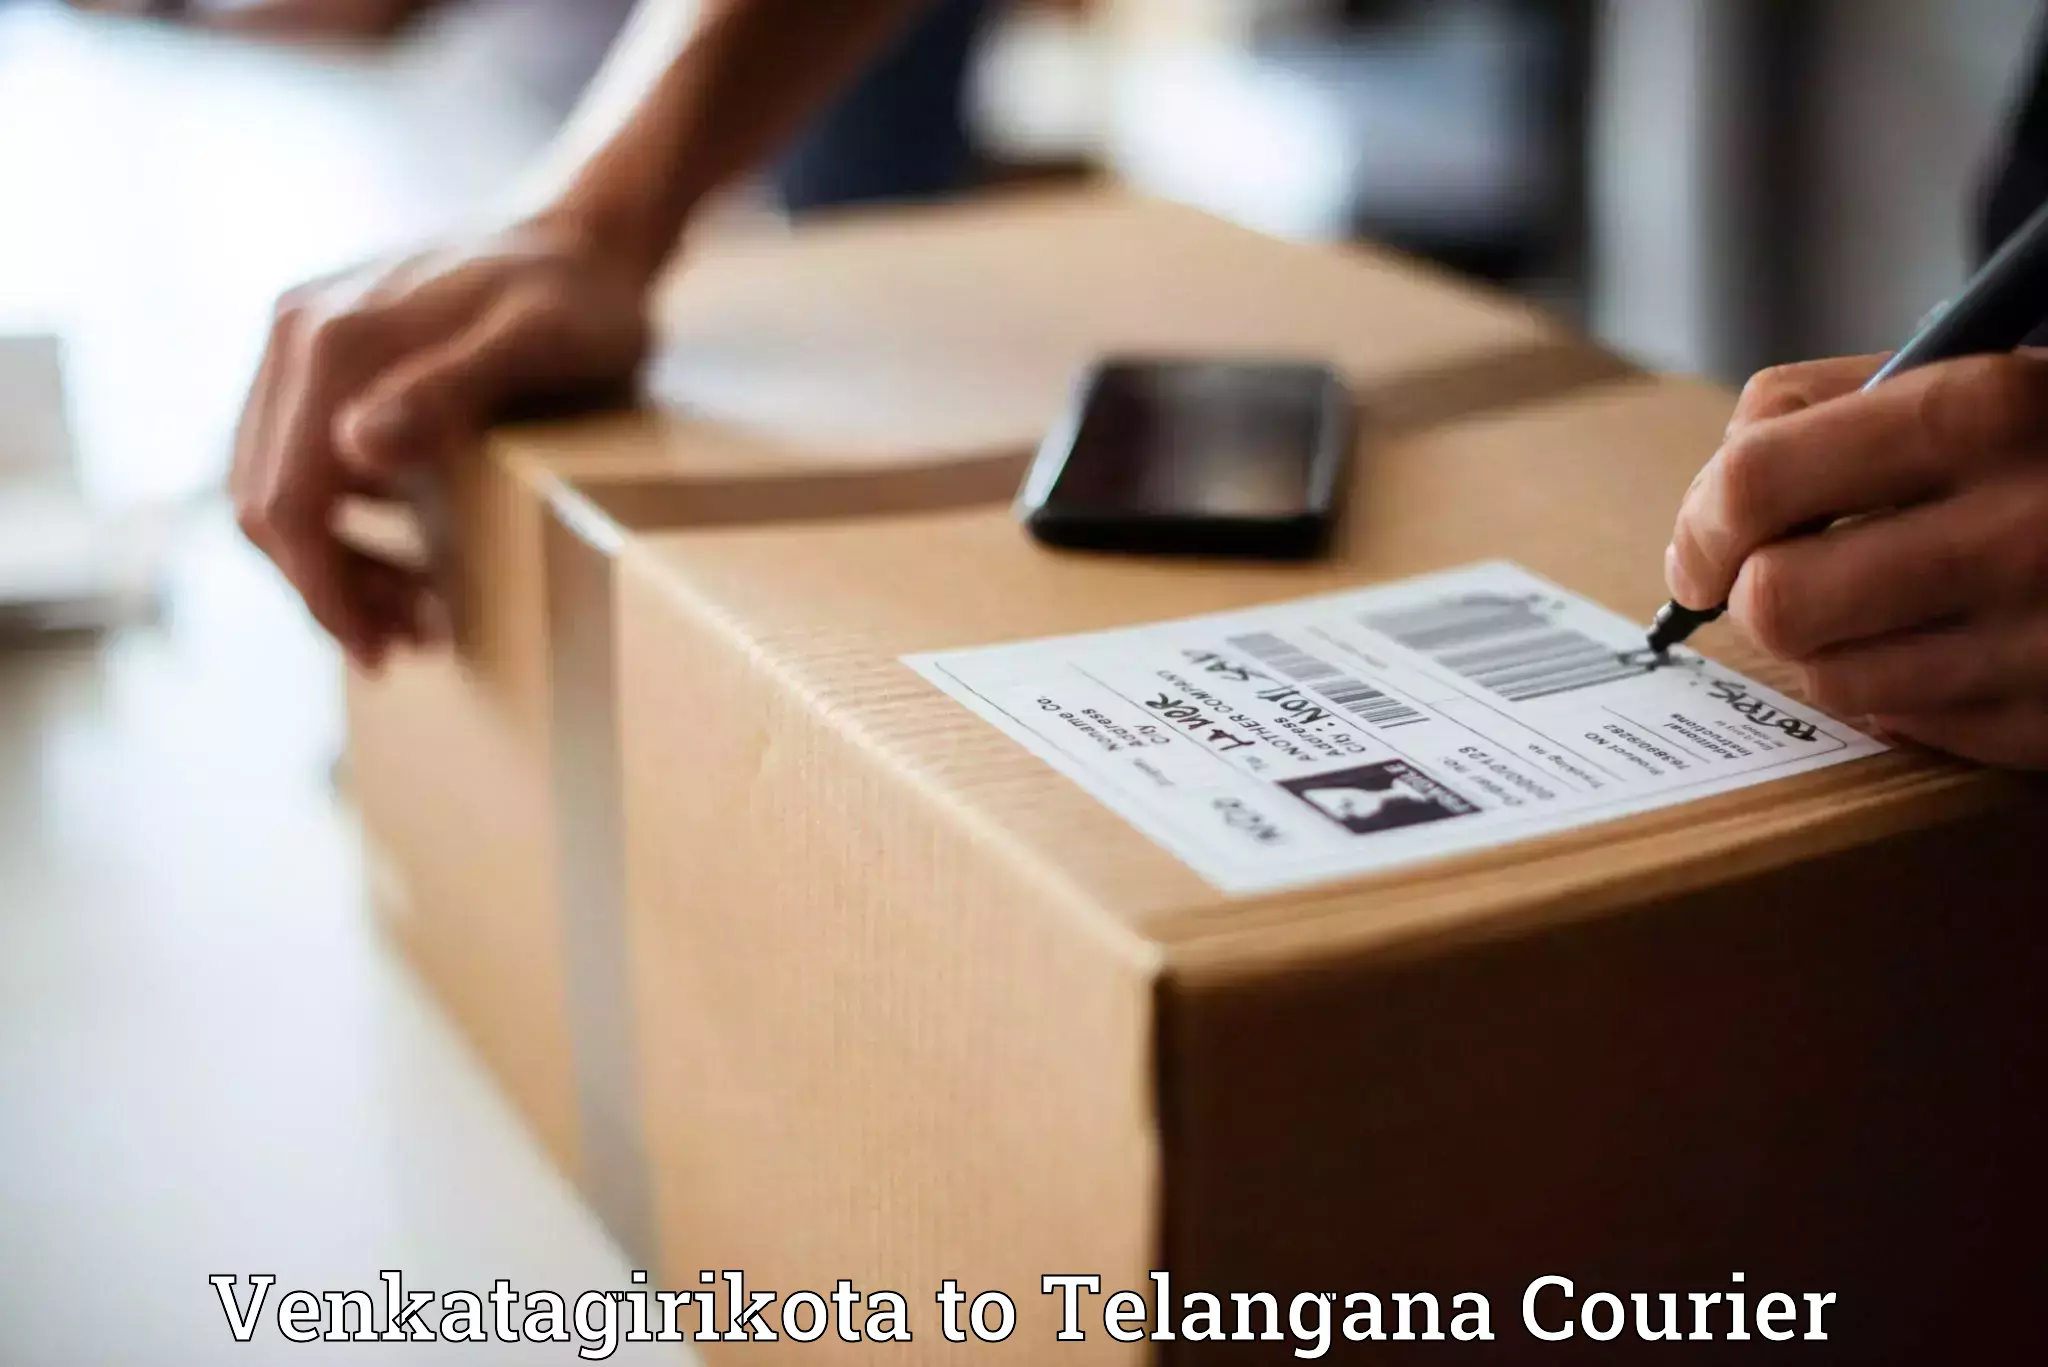 Secure package delivery in Venkatagirikota to Telangana